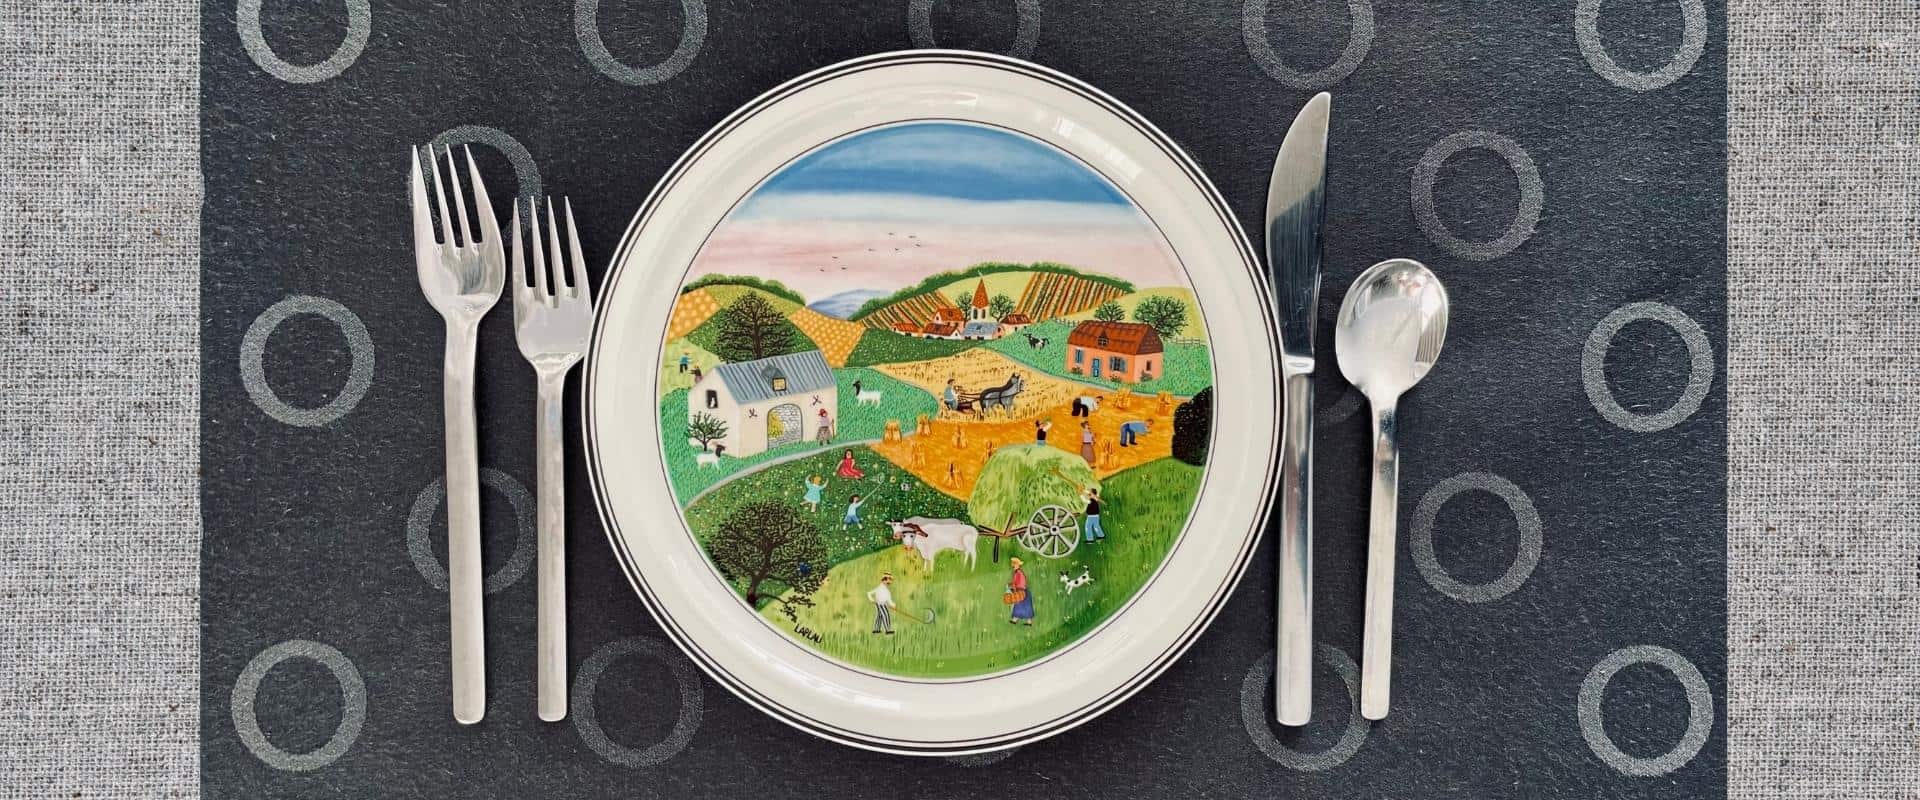 Un couvert sur une table incluant une assiette décorée par une scène de champs cultivés.